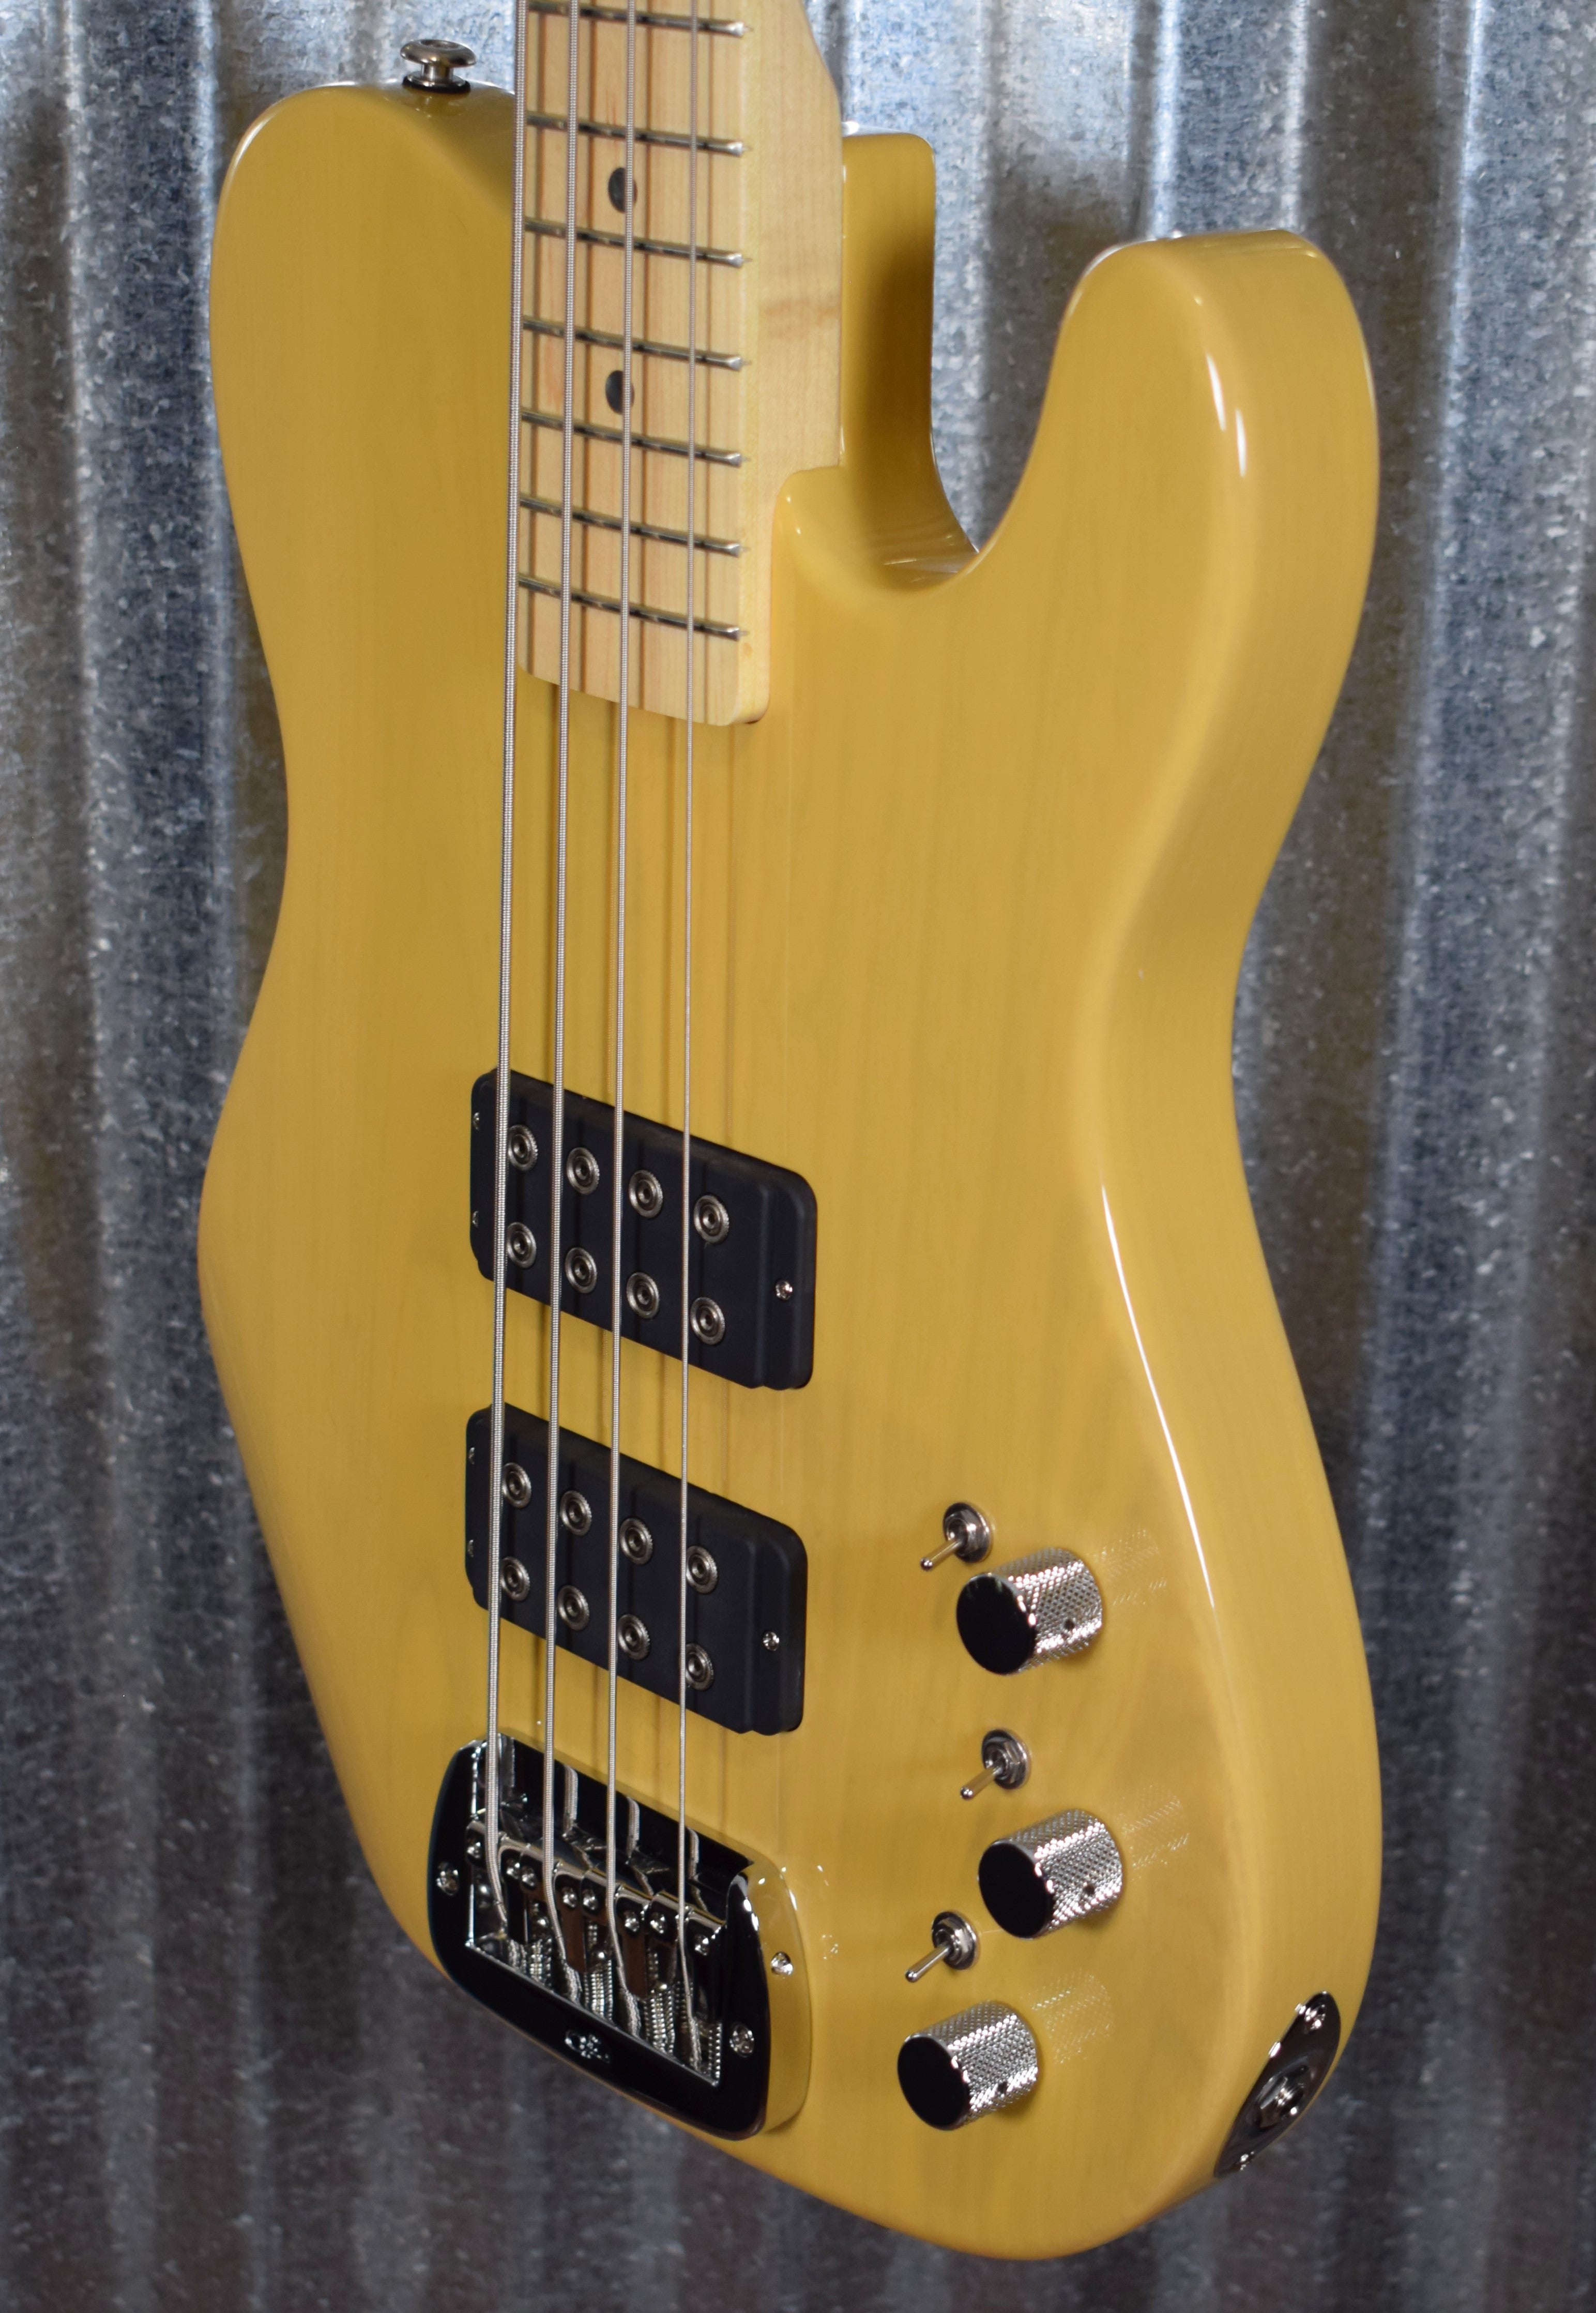 G&L USA ASAT Bass Butterscotch Blonde Maple Satin Neck & Case #6008